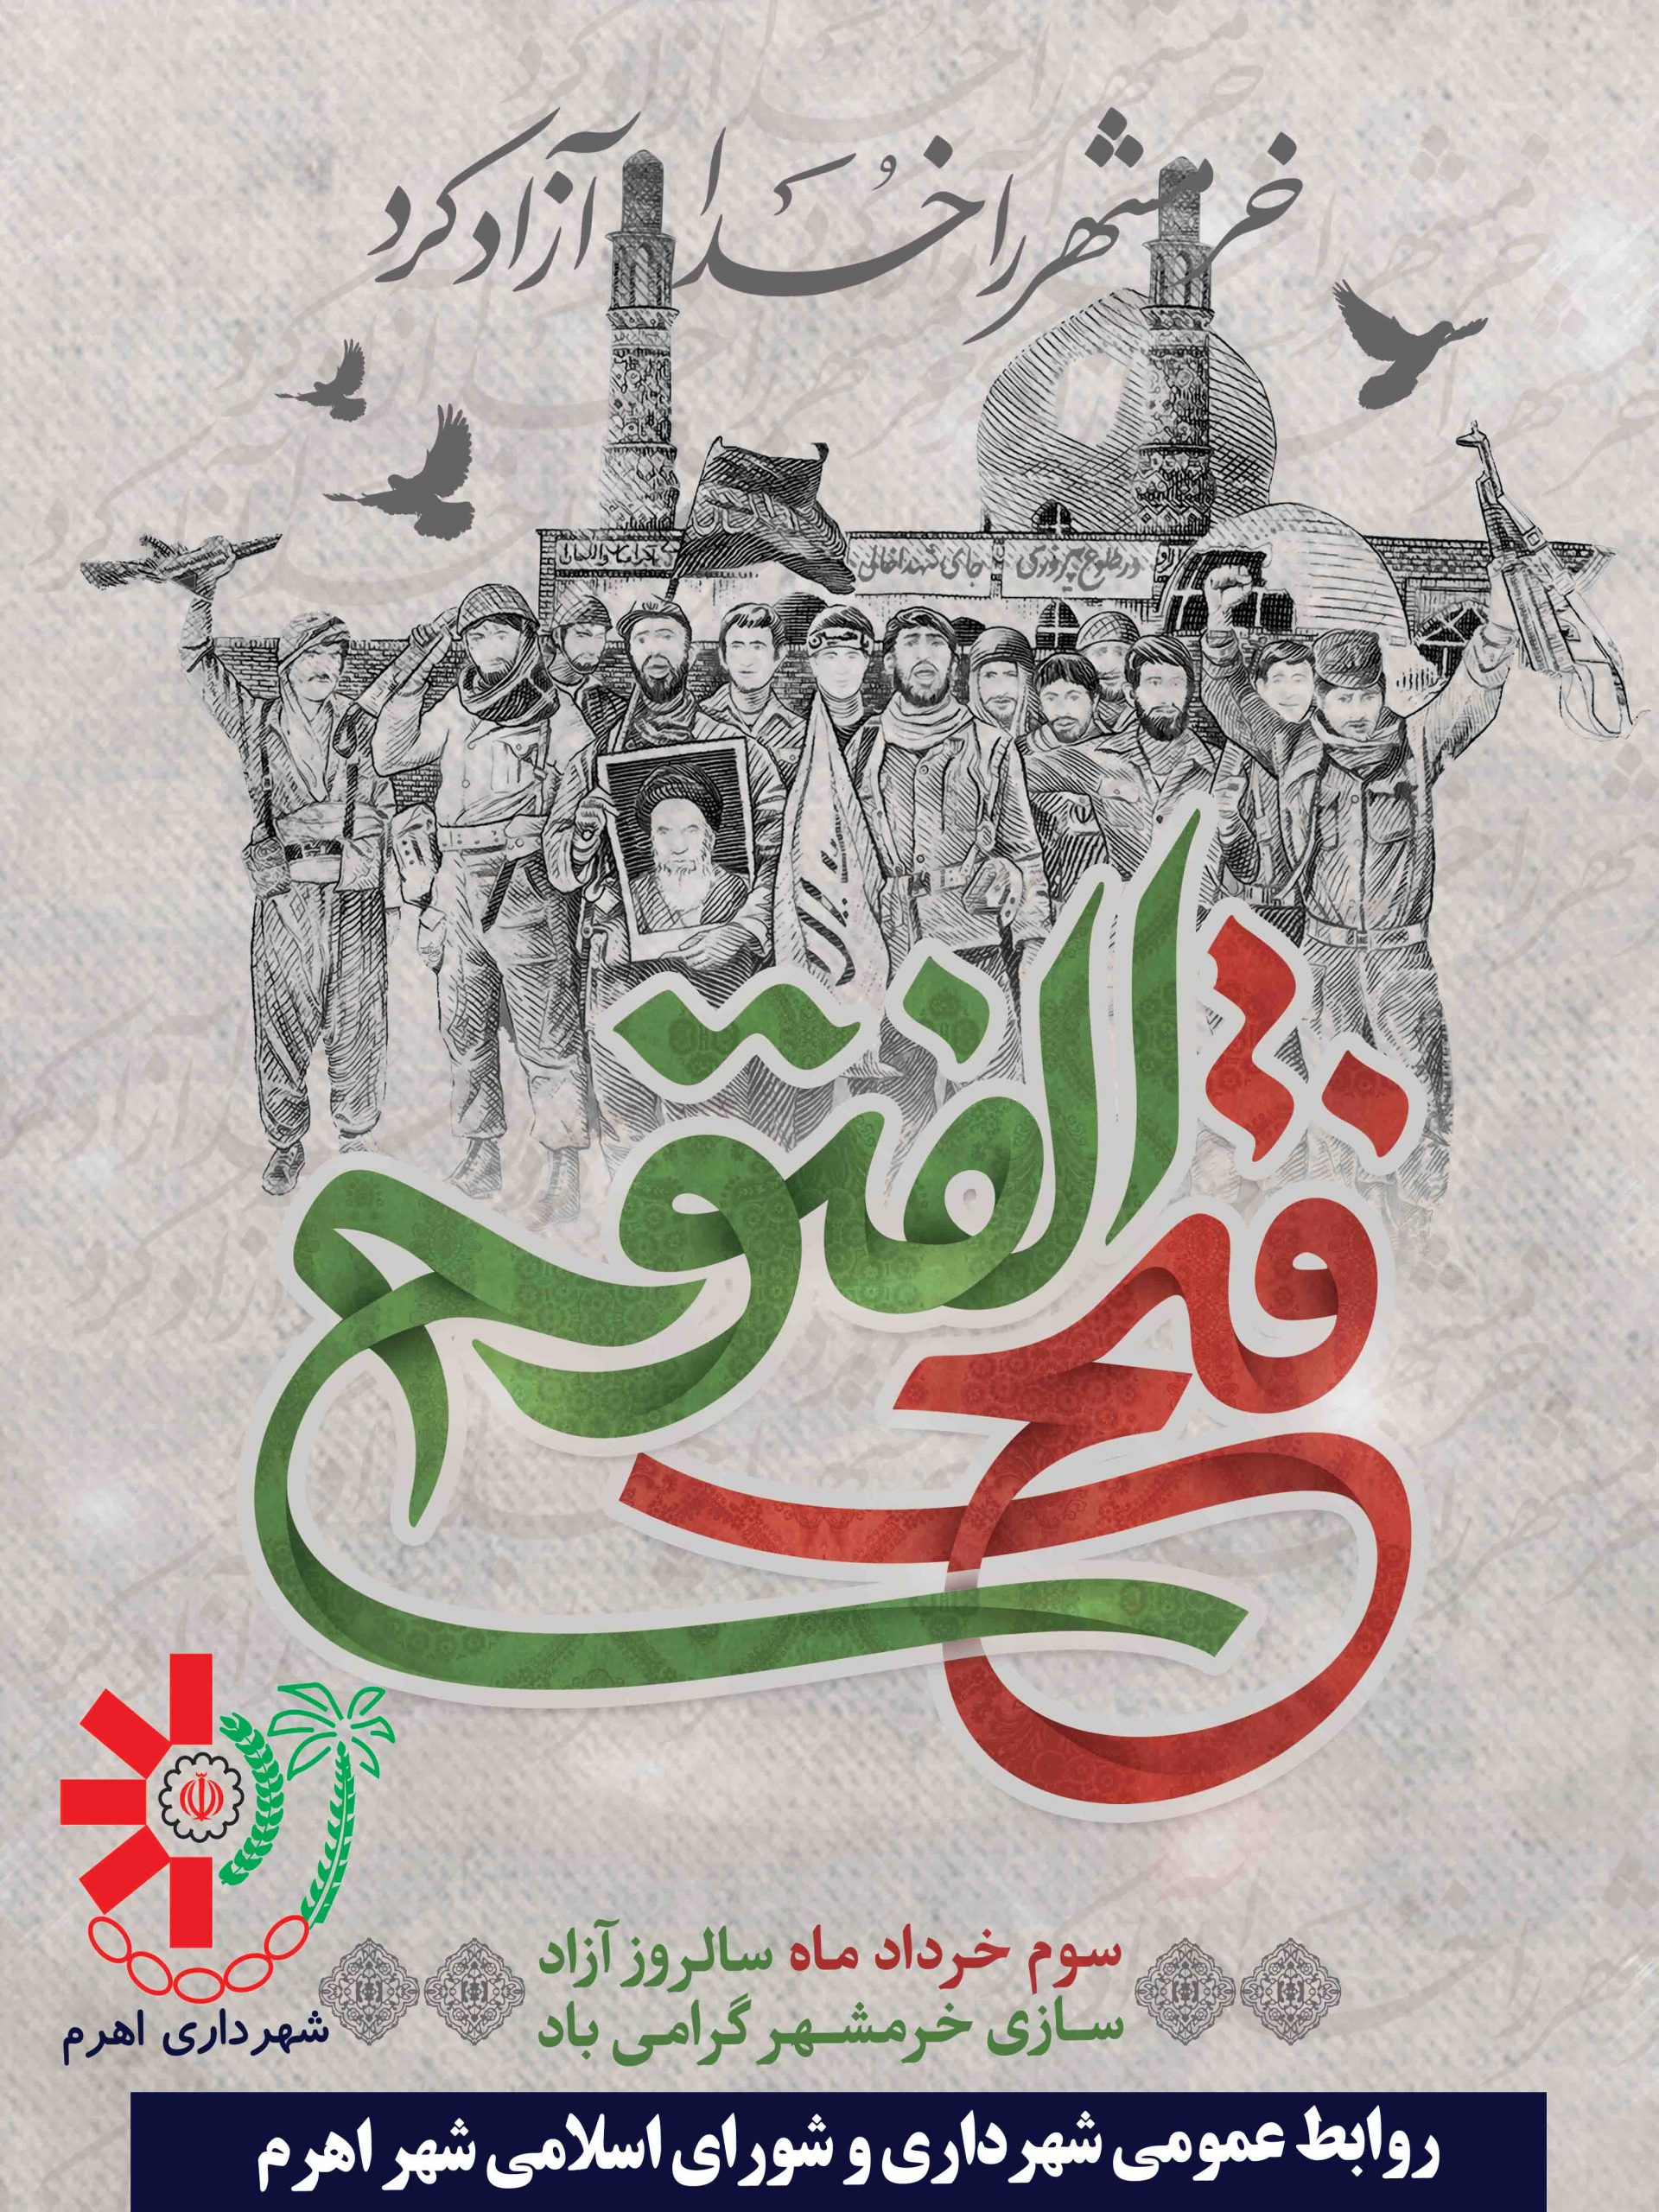 سوم خرداد سالروز آزاد سازی خرمشهر گرامی باد